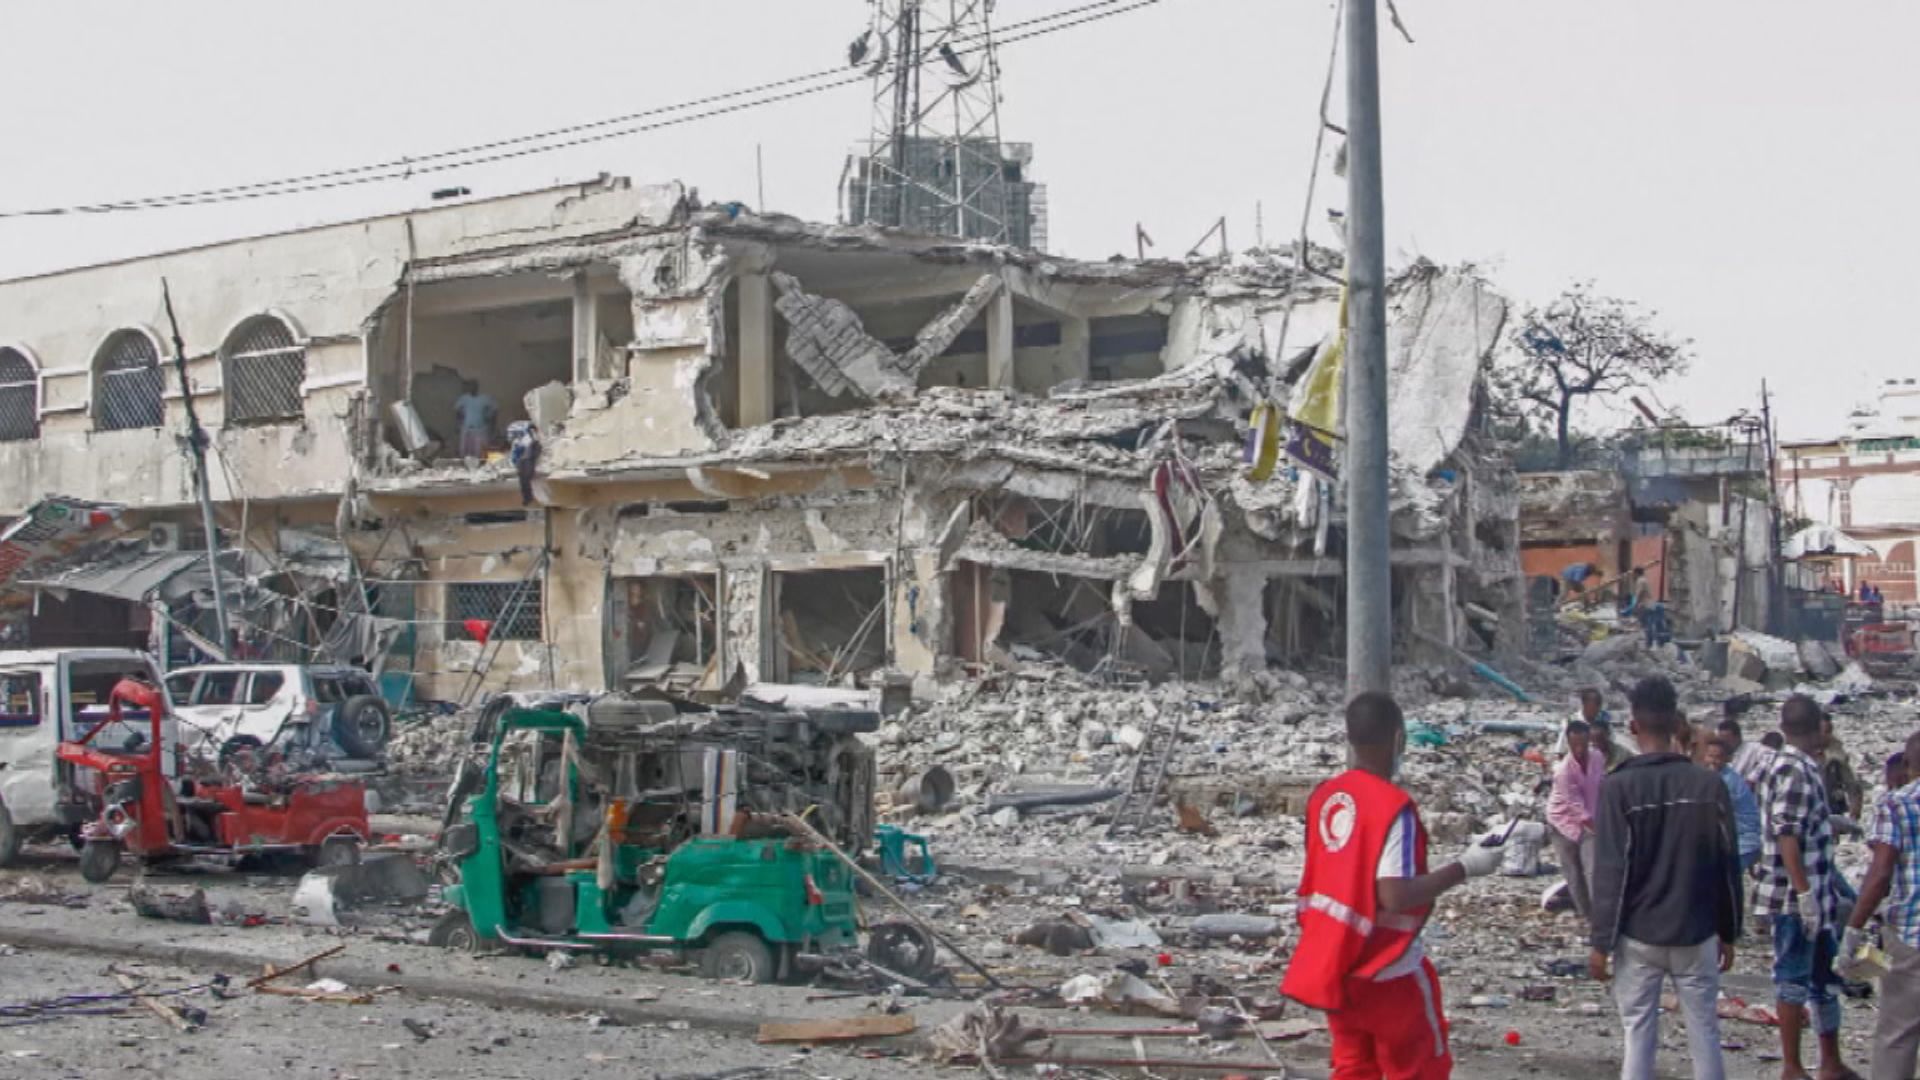 索馬里遭連環汽車炸彈襲擊多人死傷